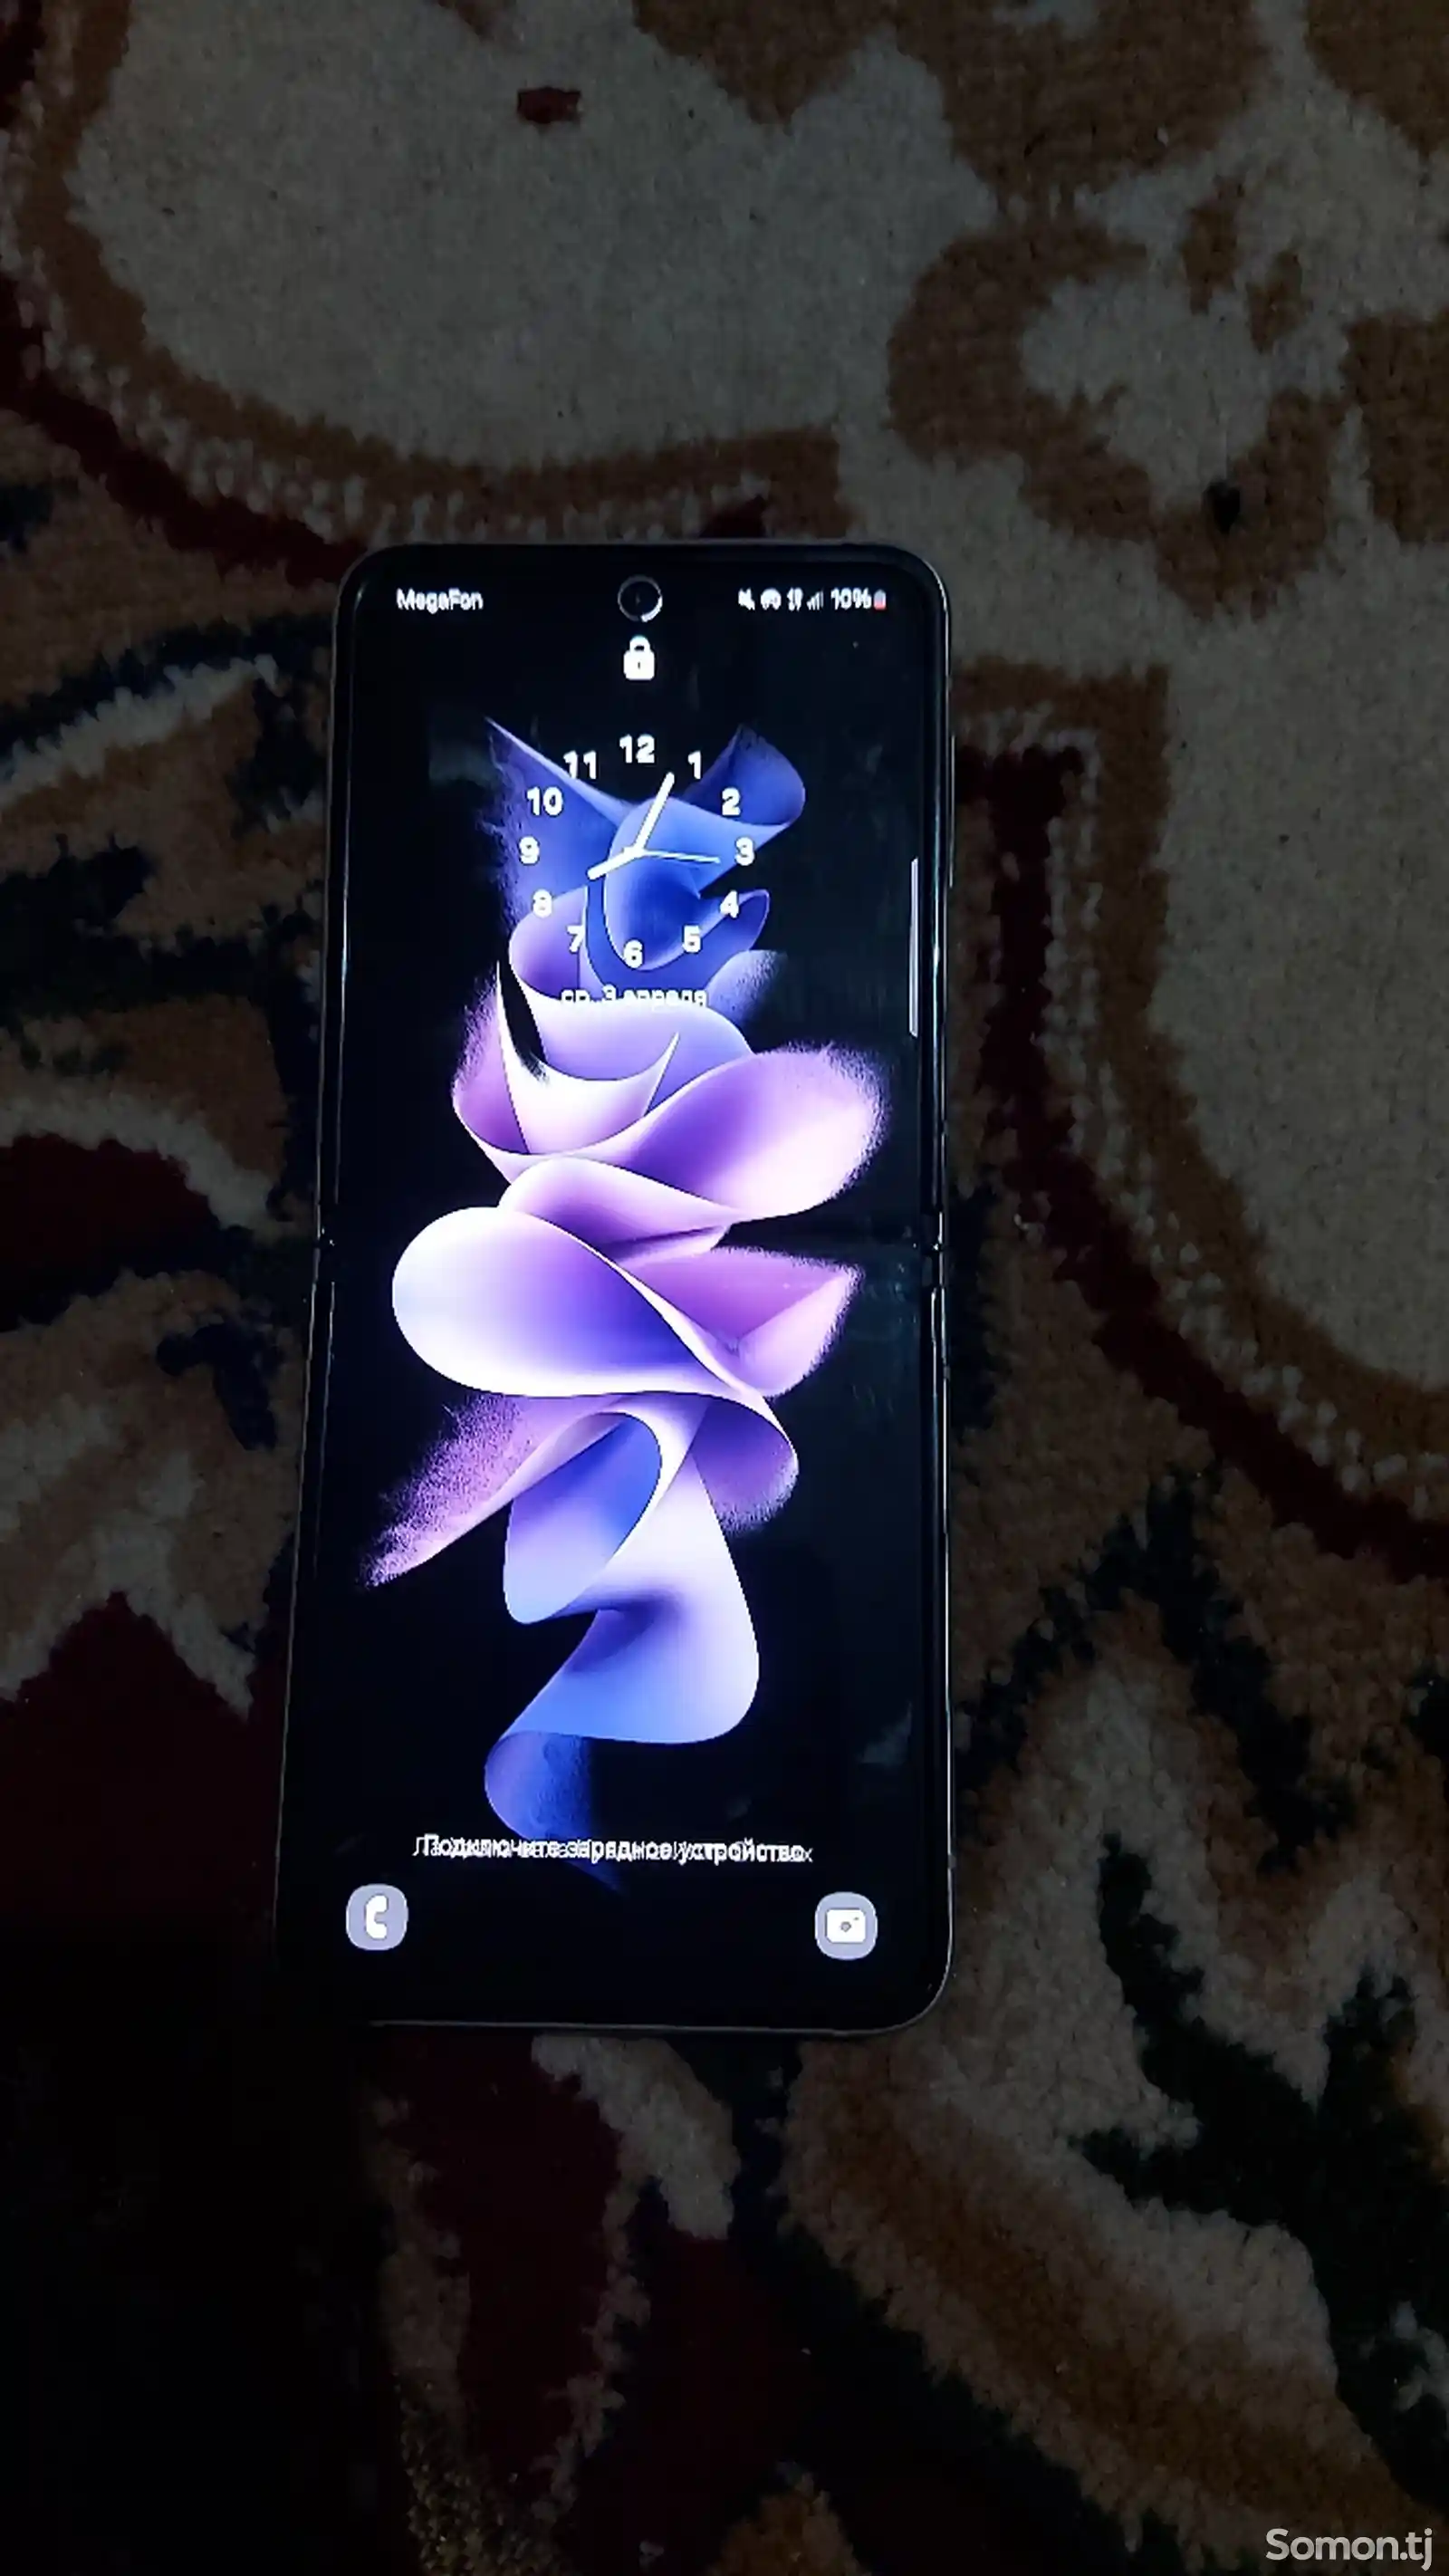 Samsung Galaxy Z Flip 3 5G-4